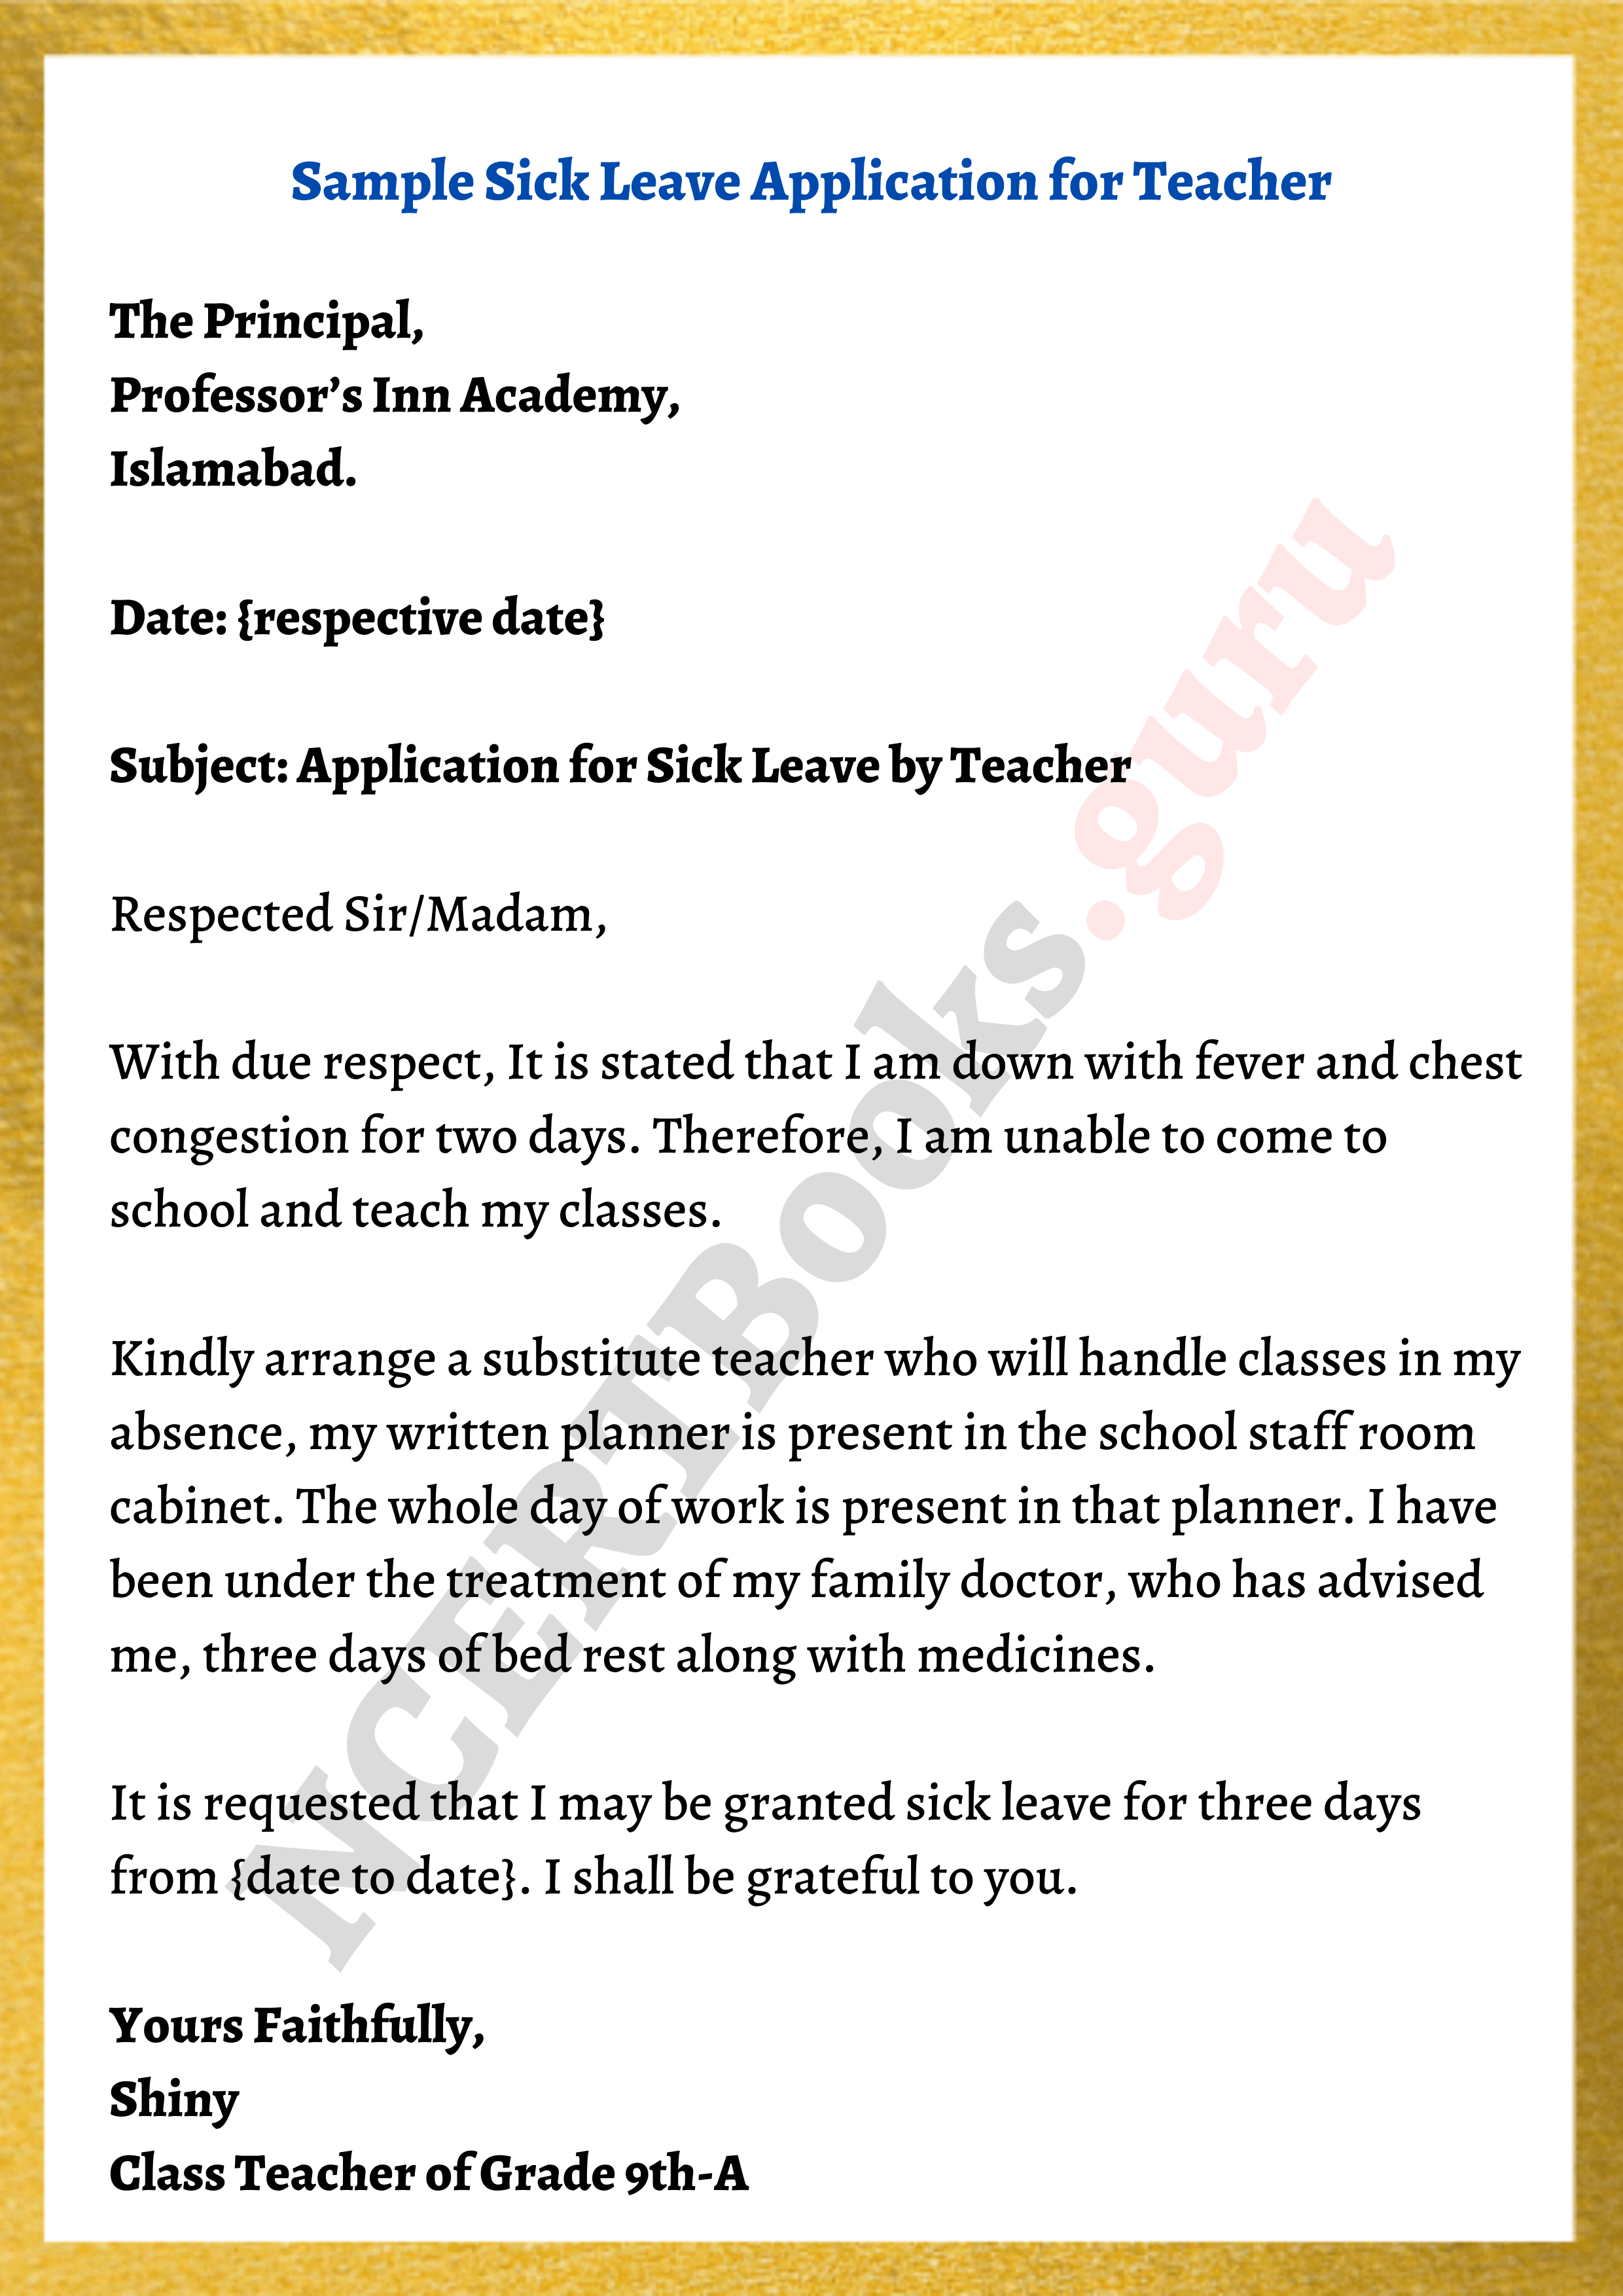 Sick leave letter sample for teacher